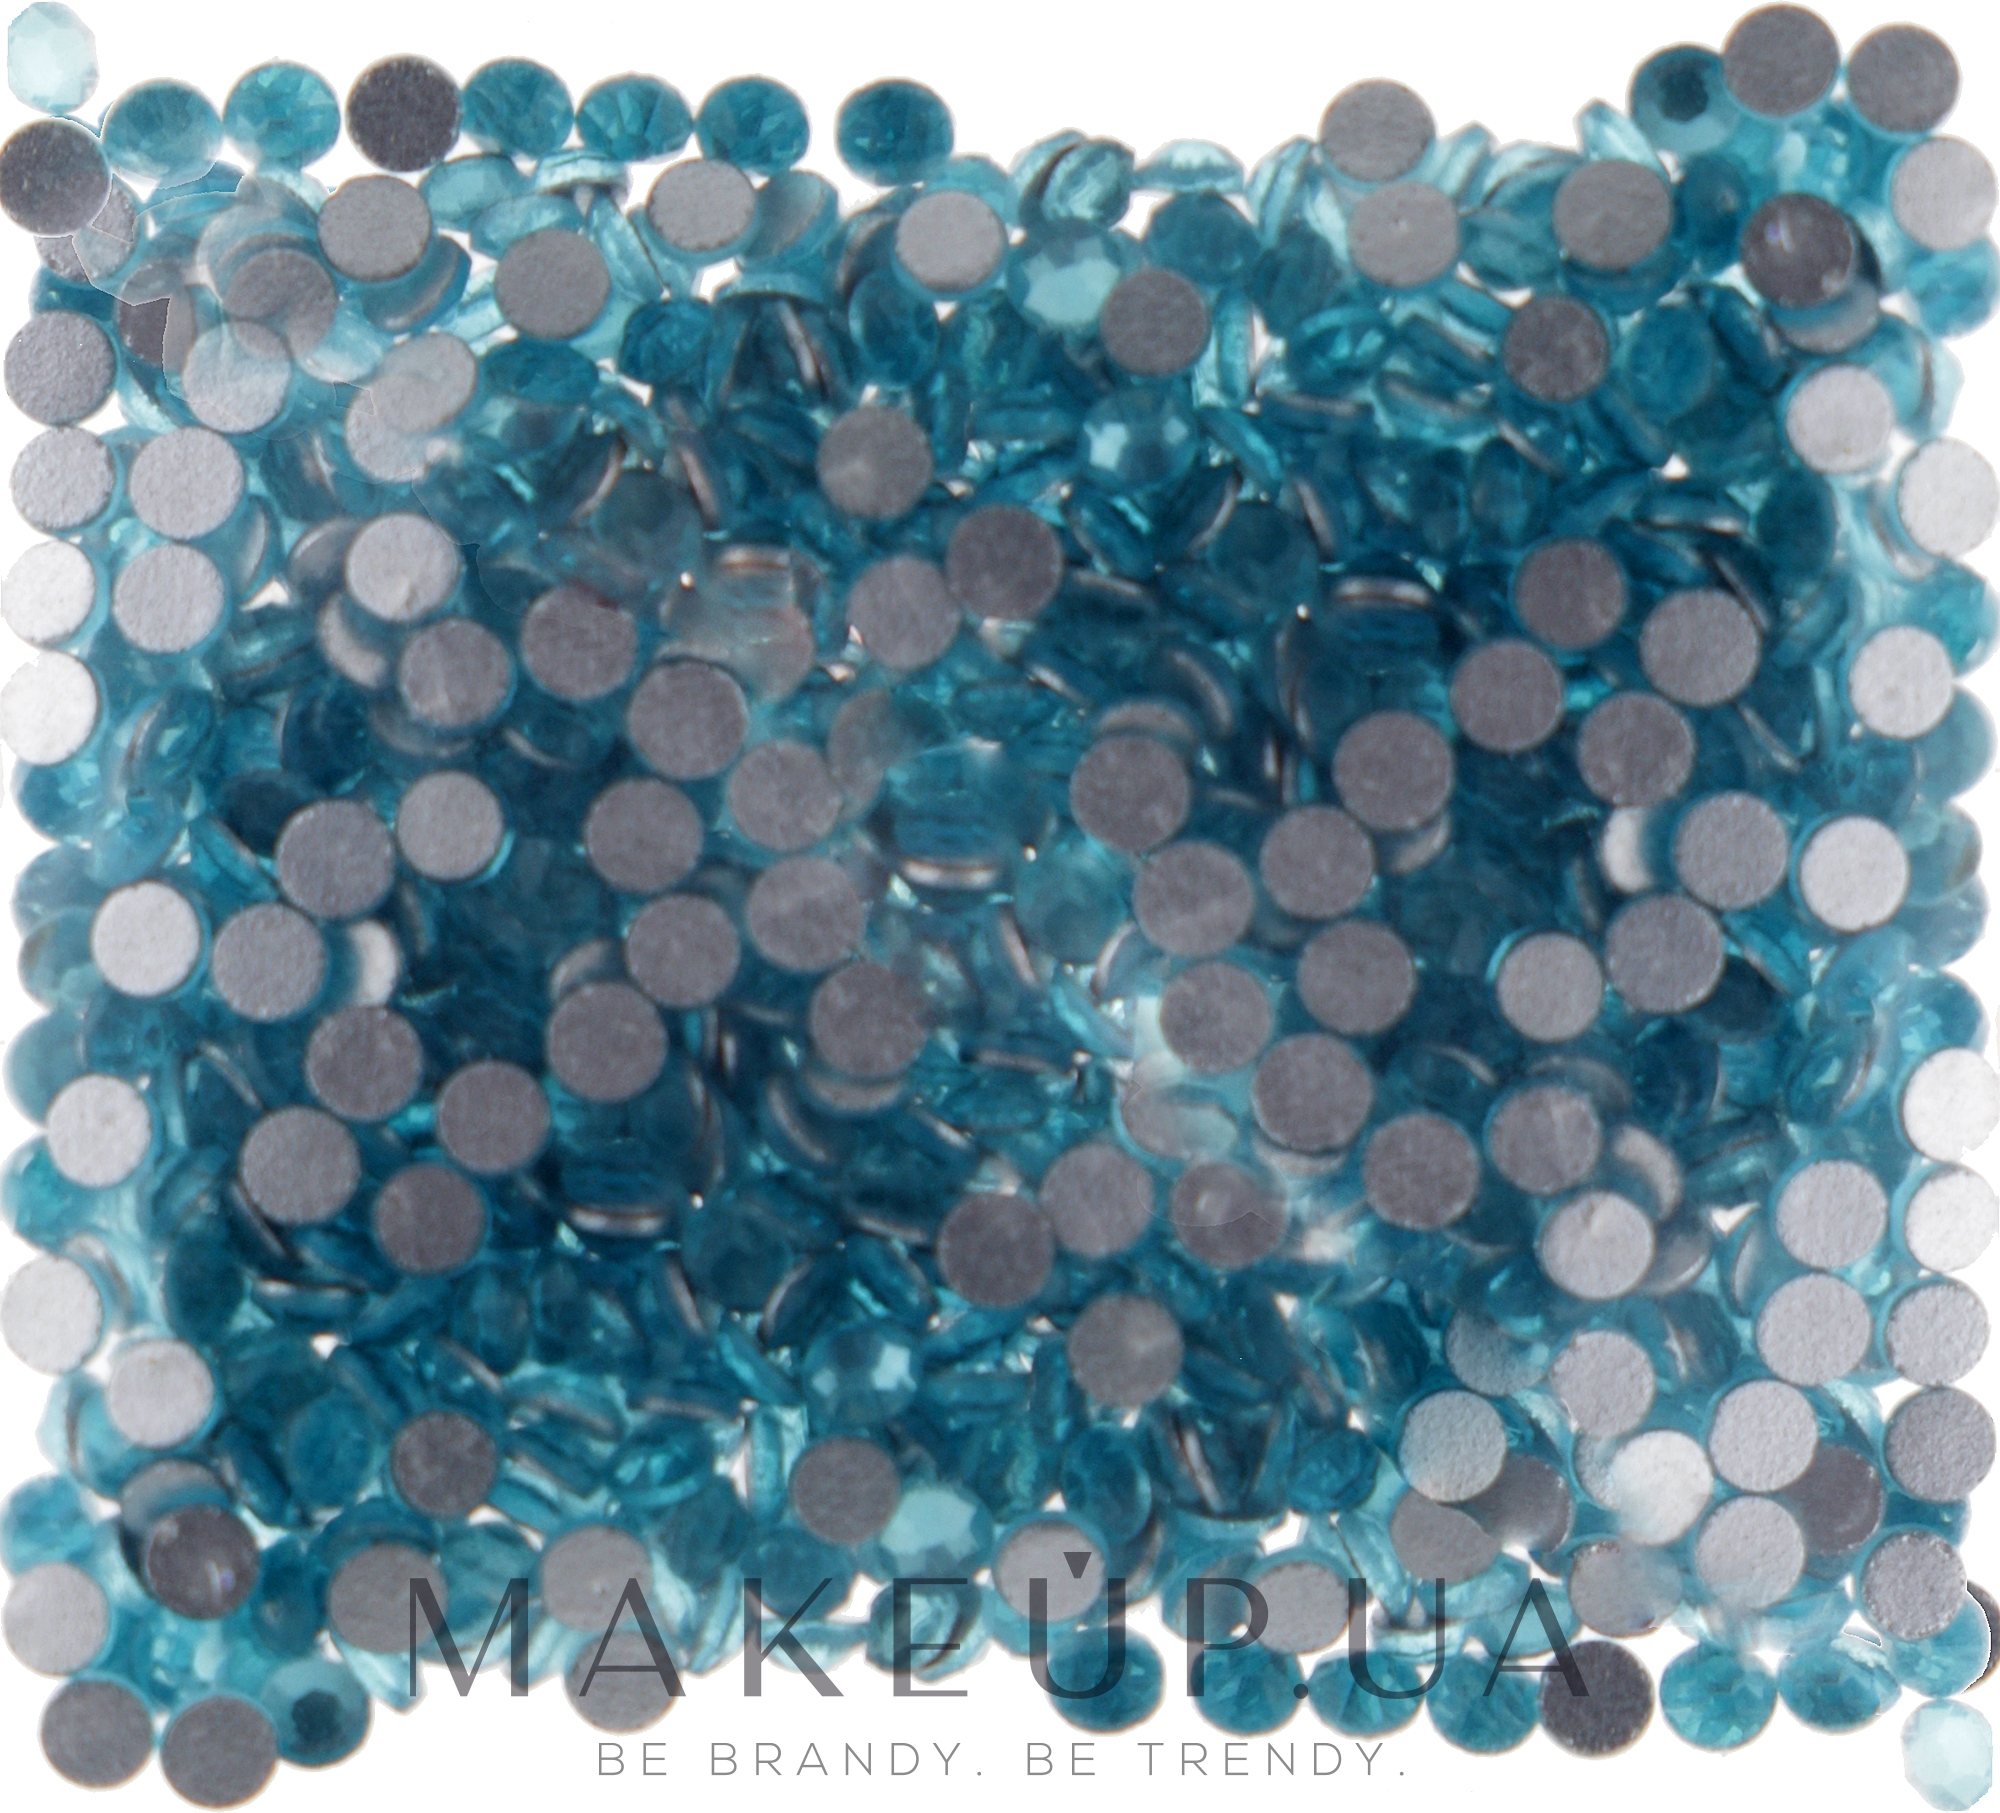 Декоративные кристаллы для ногтей "Aque Bohemica", размер SS 05, 500 шт. - Kodi Professional — фото 500шт